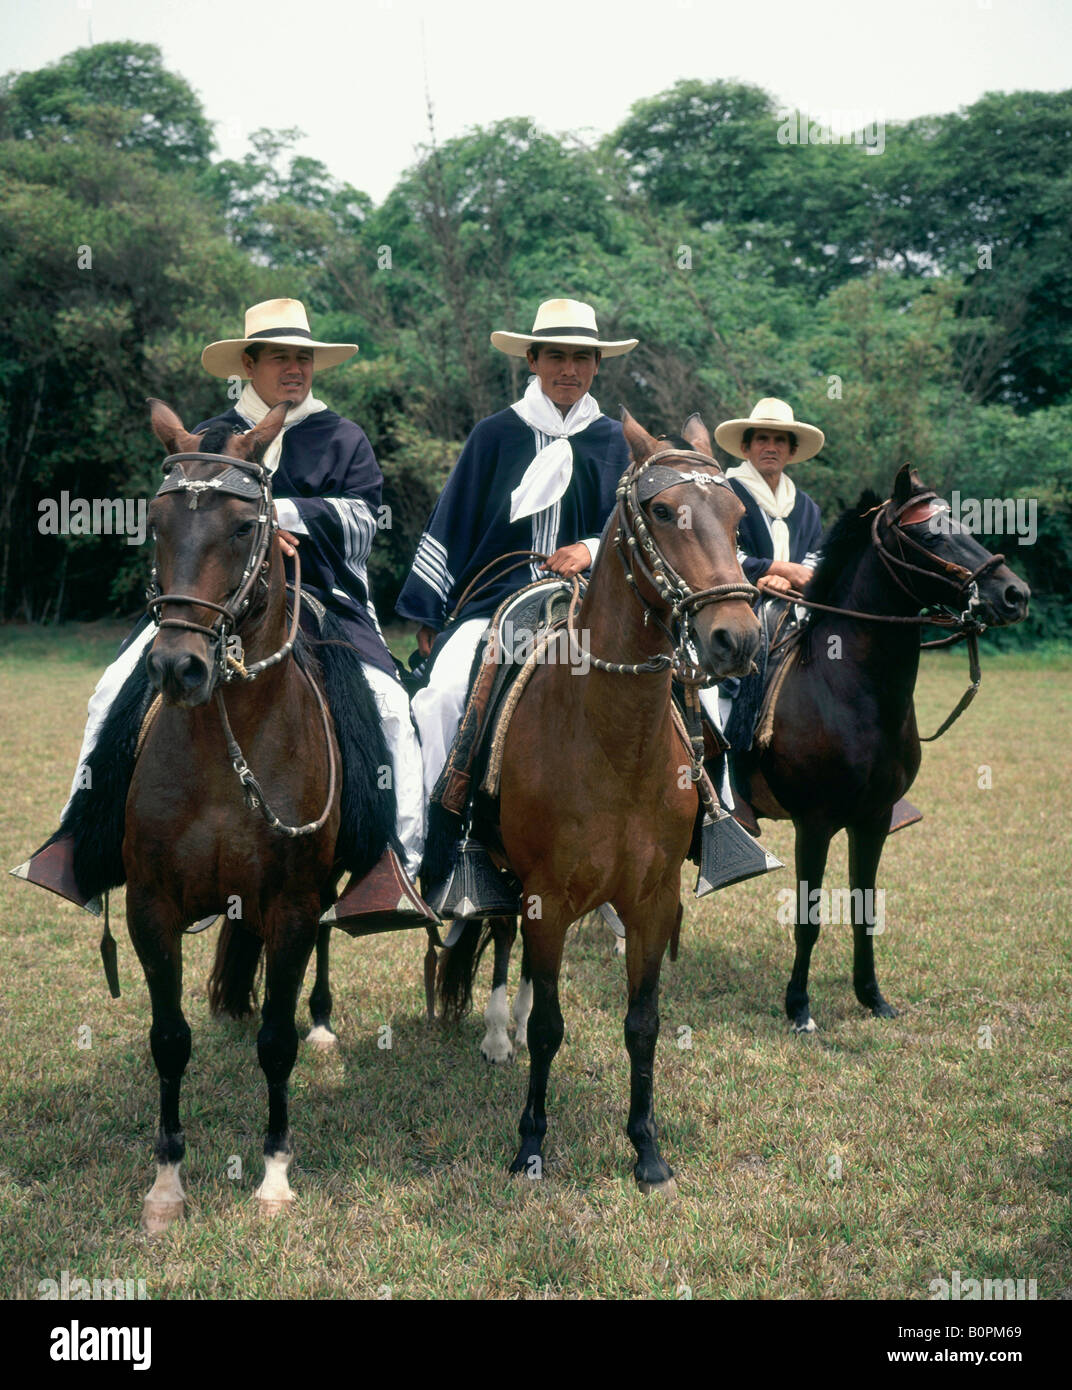 Vertical image trois cavaliers montés sur des chevaux péruviens, défaut de démontrer leur aptitude à montrer sur hacienda près de Lima Pérou Amérique du Sud Banque D'Images